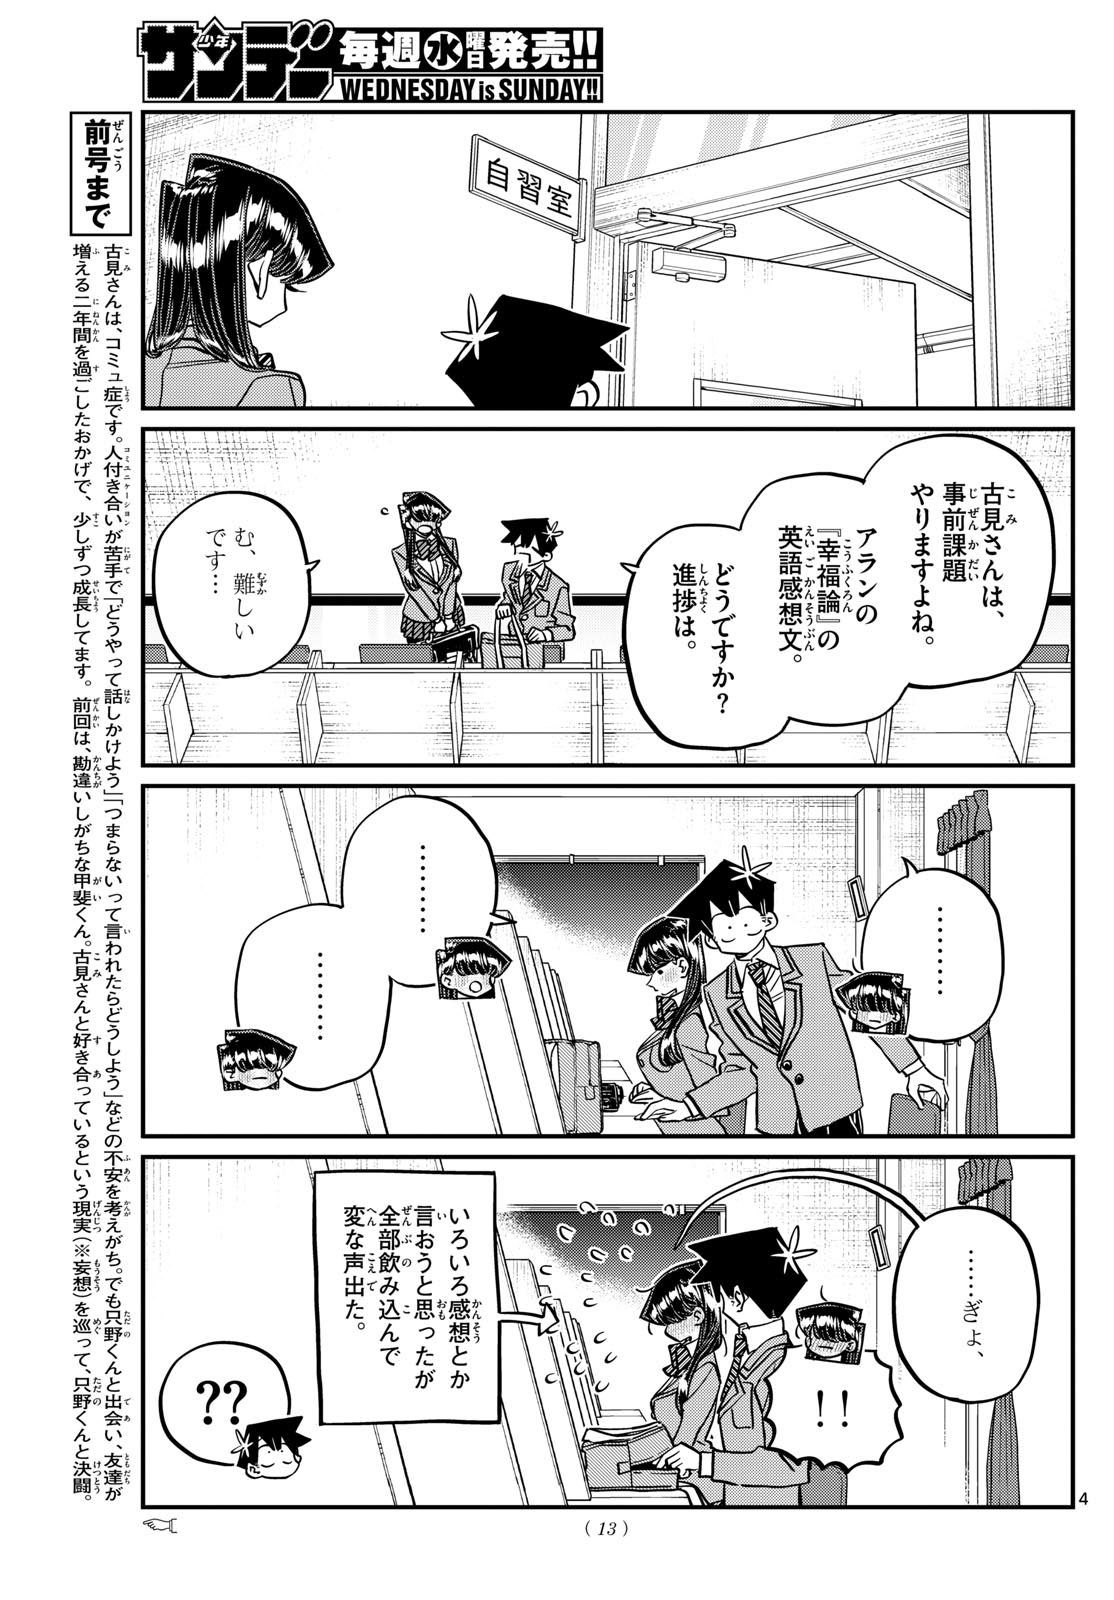 Komi-san wa Komyushou Desu - Chapter 472 - Page 4